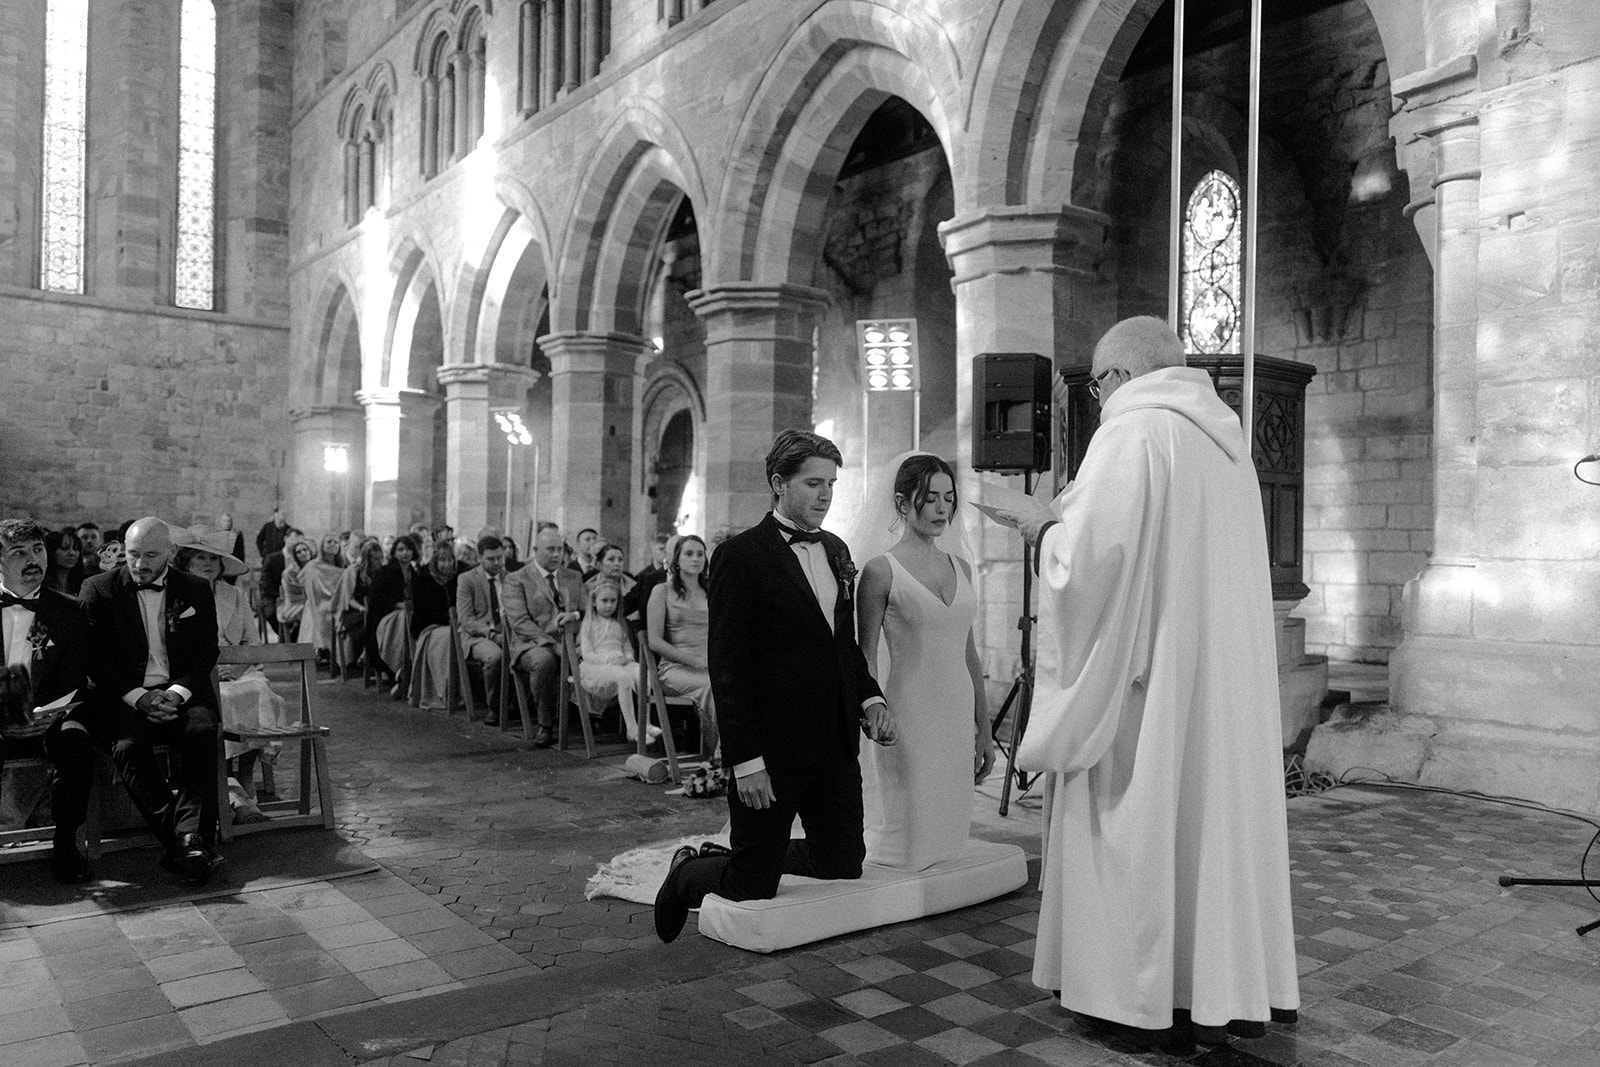 Brinkburn Priory Wedding | Leica Q & Leica M6 Cameras | Portra 800 & Tri X Film